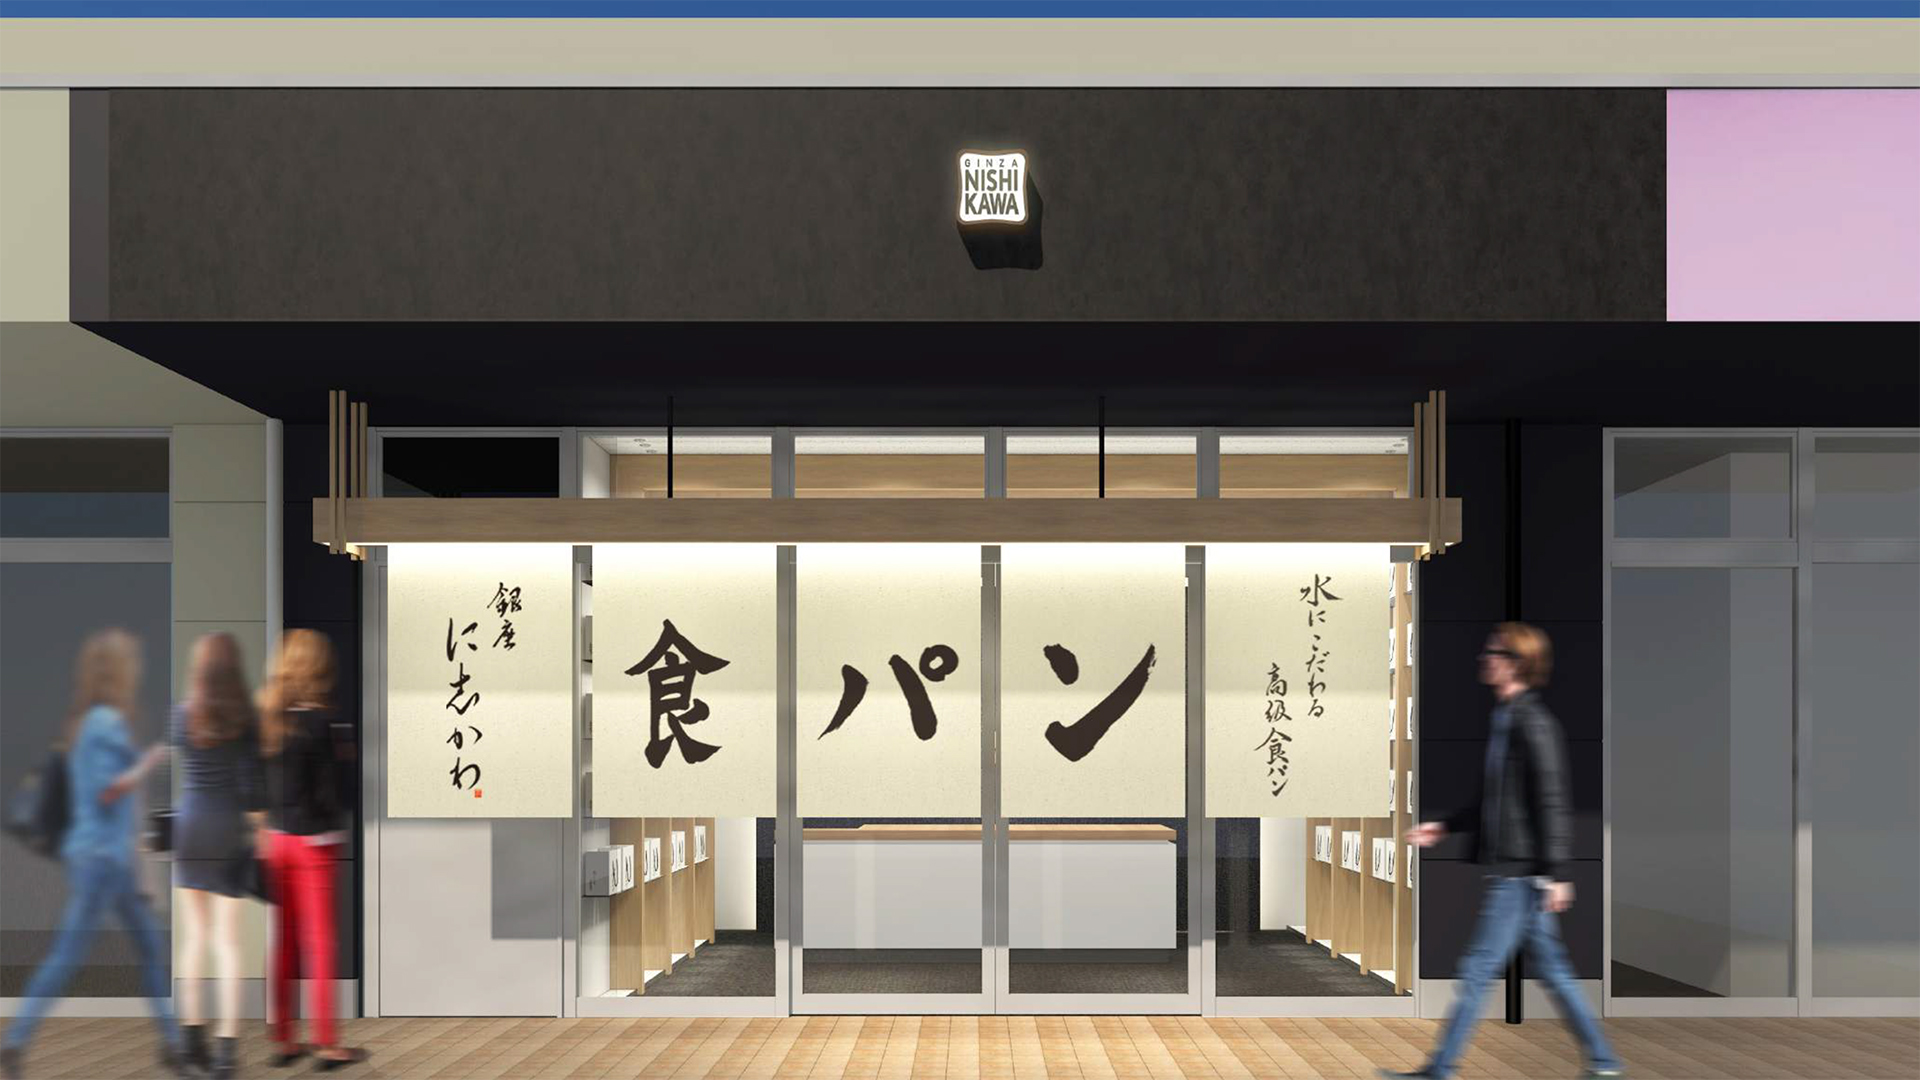 9月24日 木 銀座に志かわ 北九州八幡西店 が福岡県北九州市にオープンいたします 銀座に志かわ